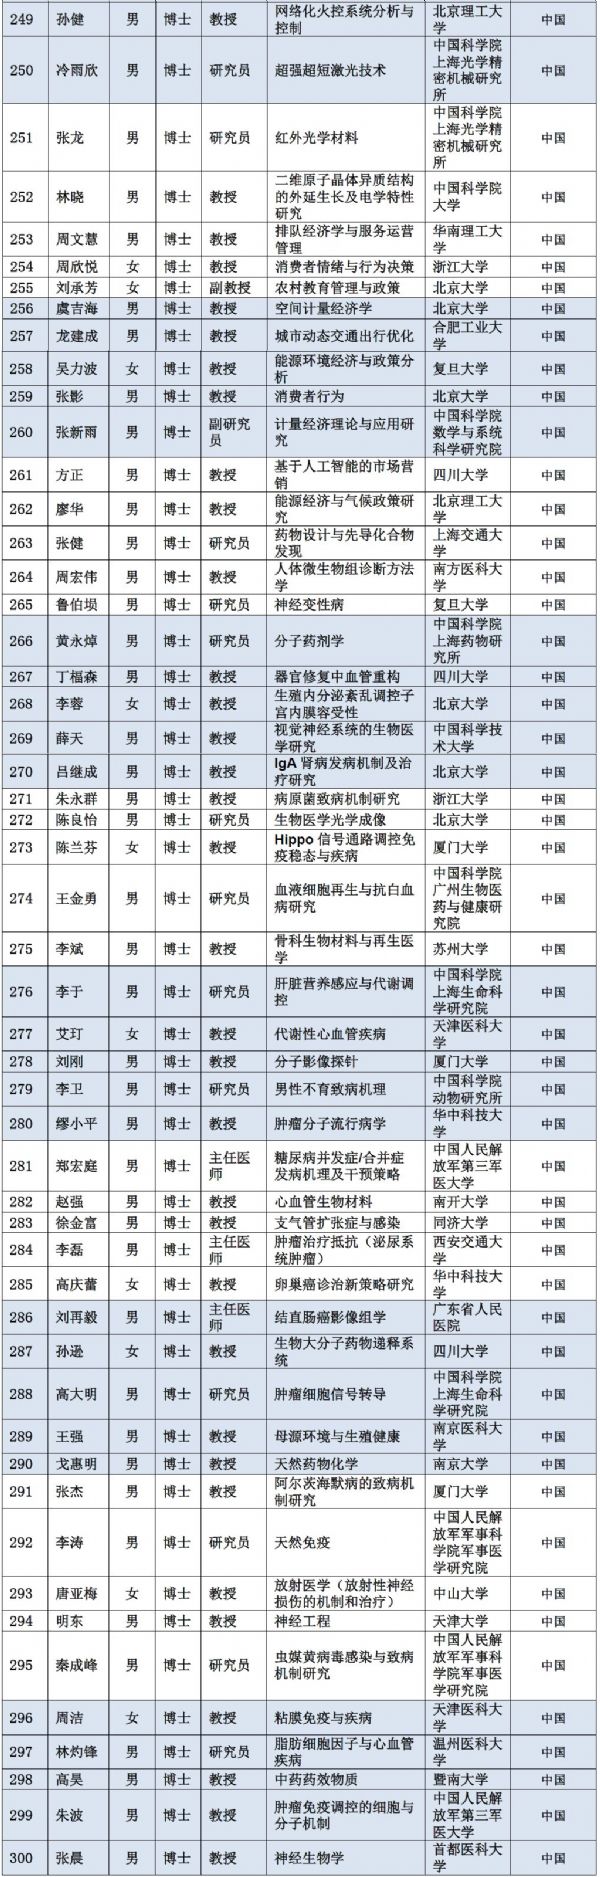 2019年杰青建议资助名单公布！